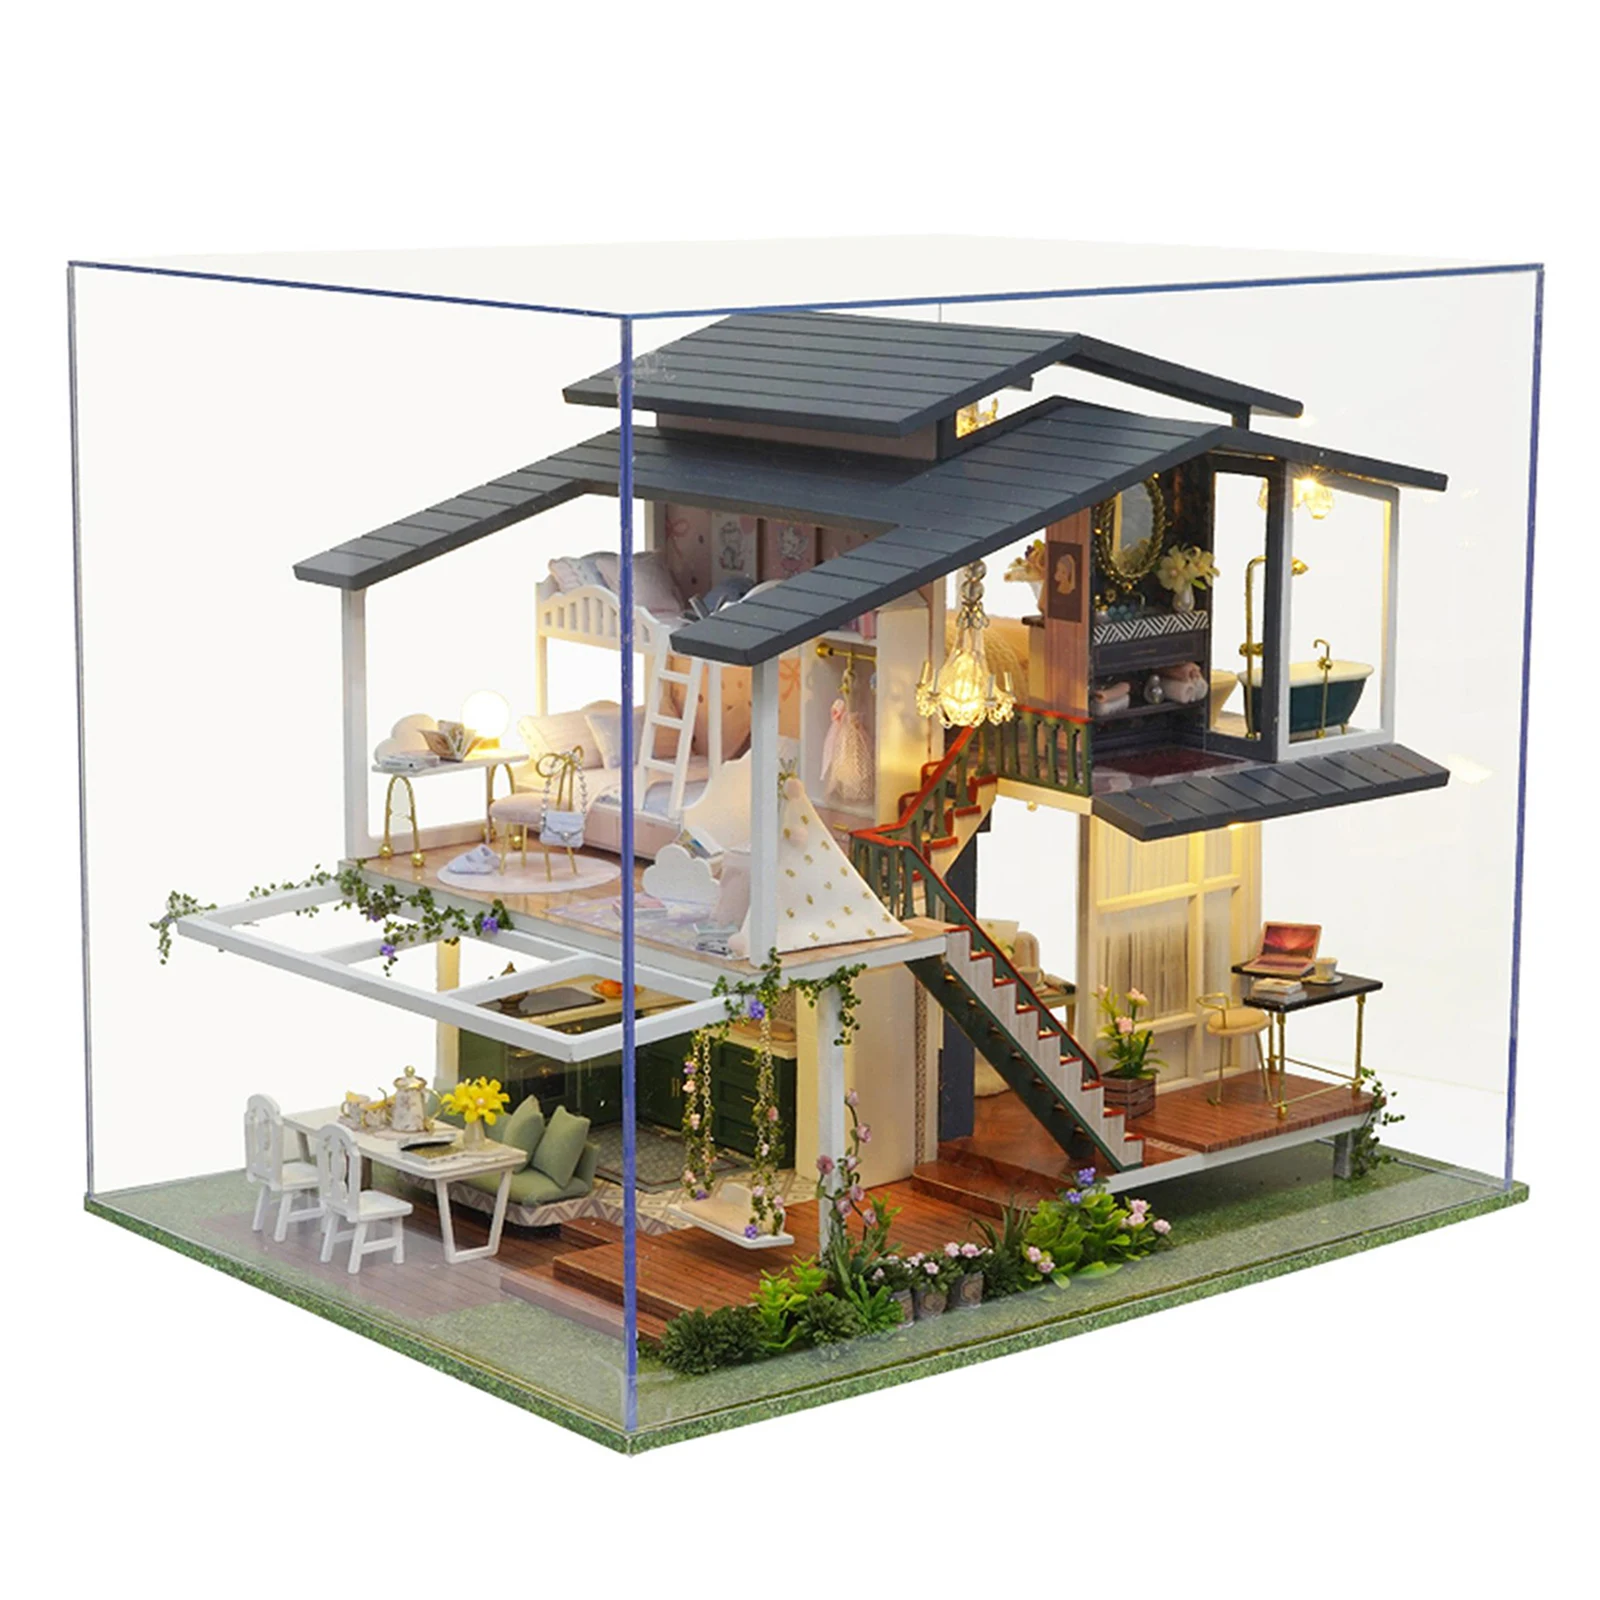 DEL Lumière À faire soi-même Miniature maison de poupée créatifs Monet mobilier de jardin Kits Fantasy 